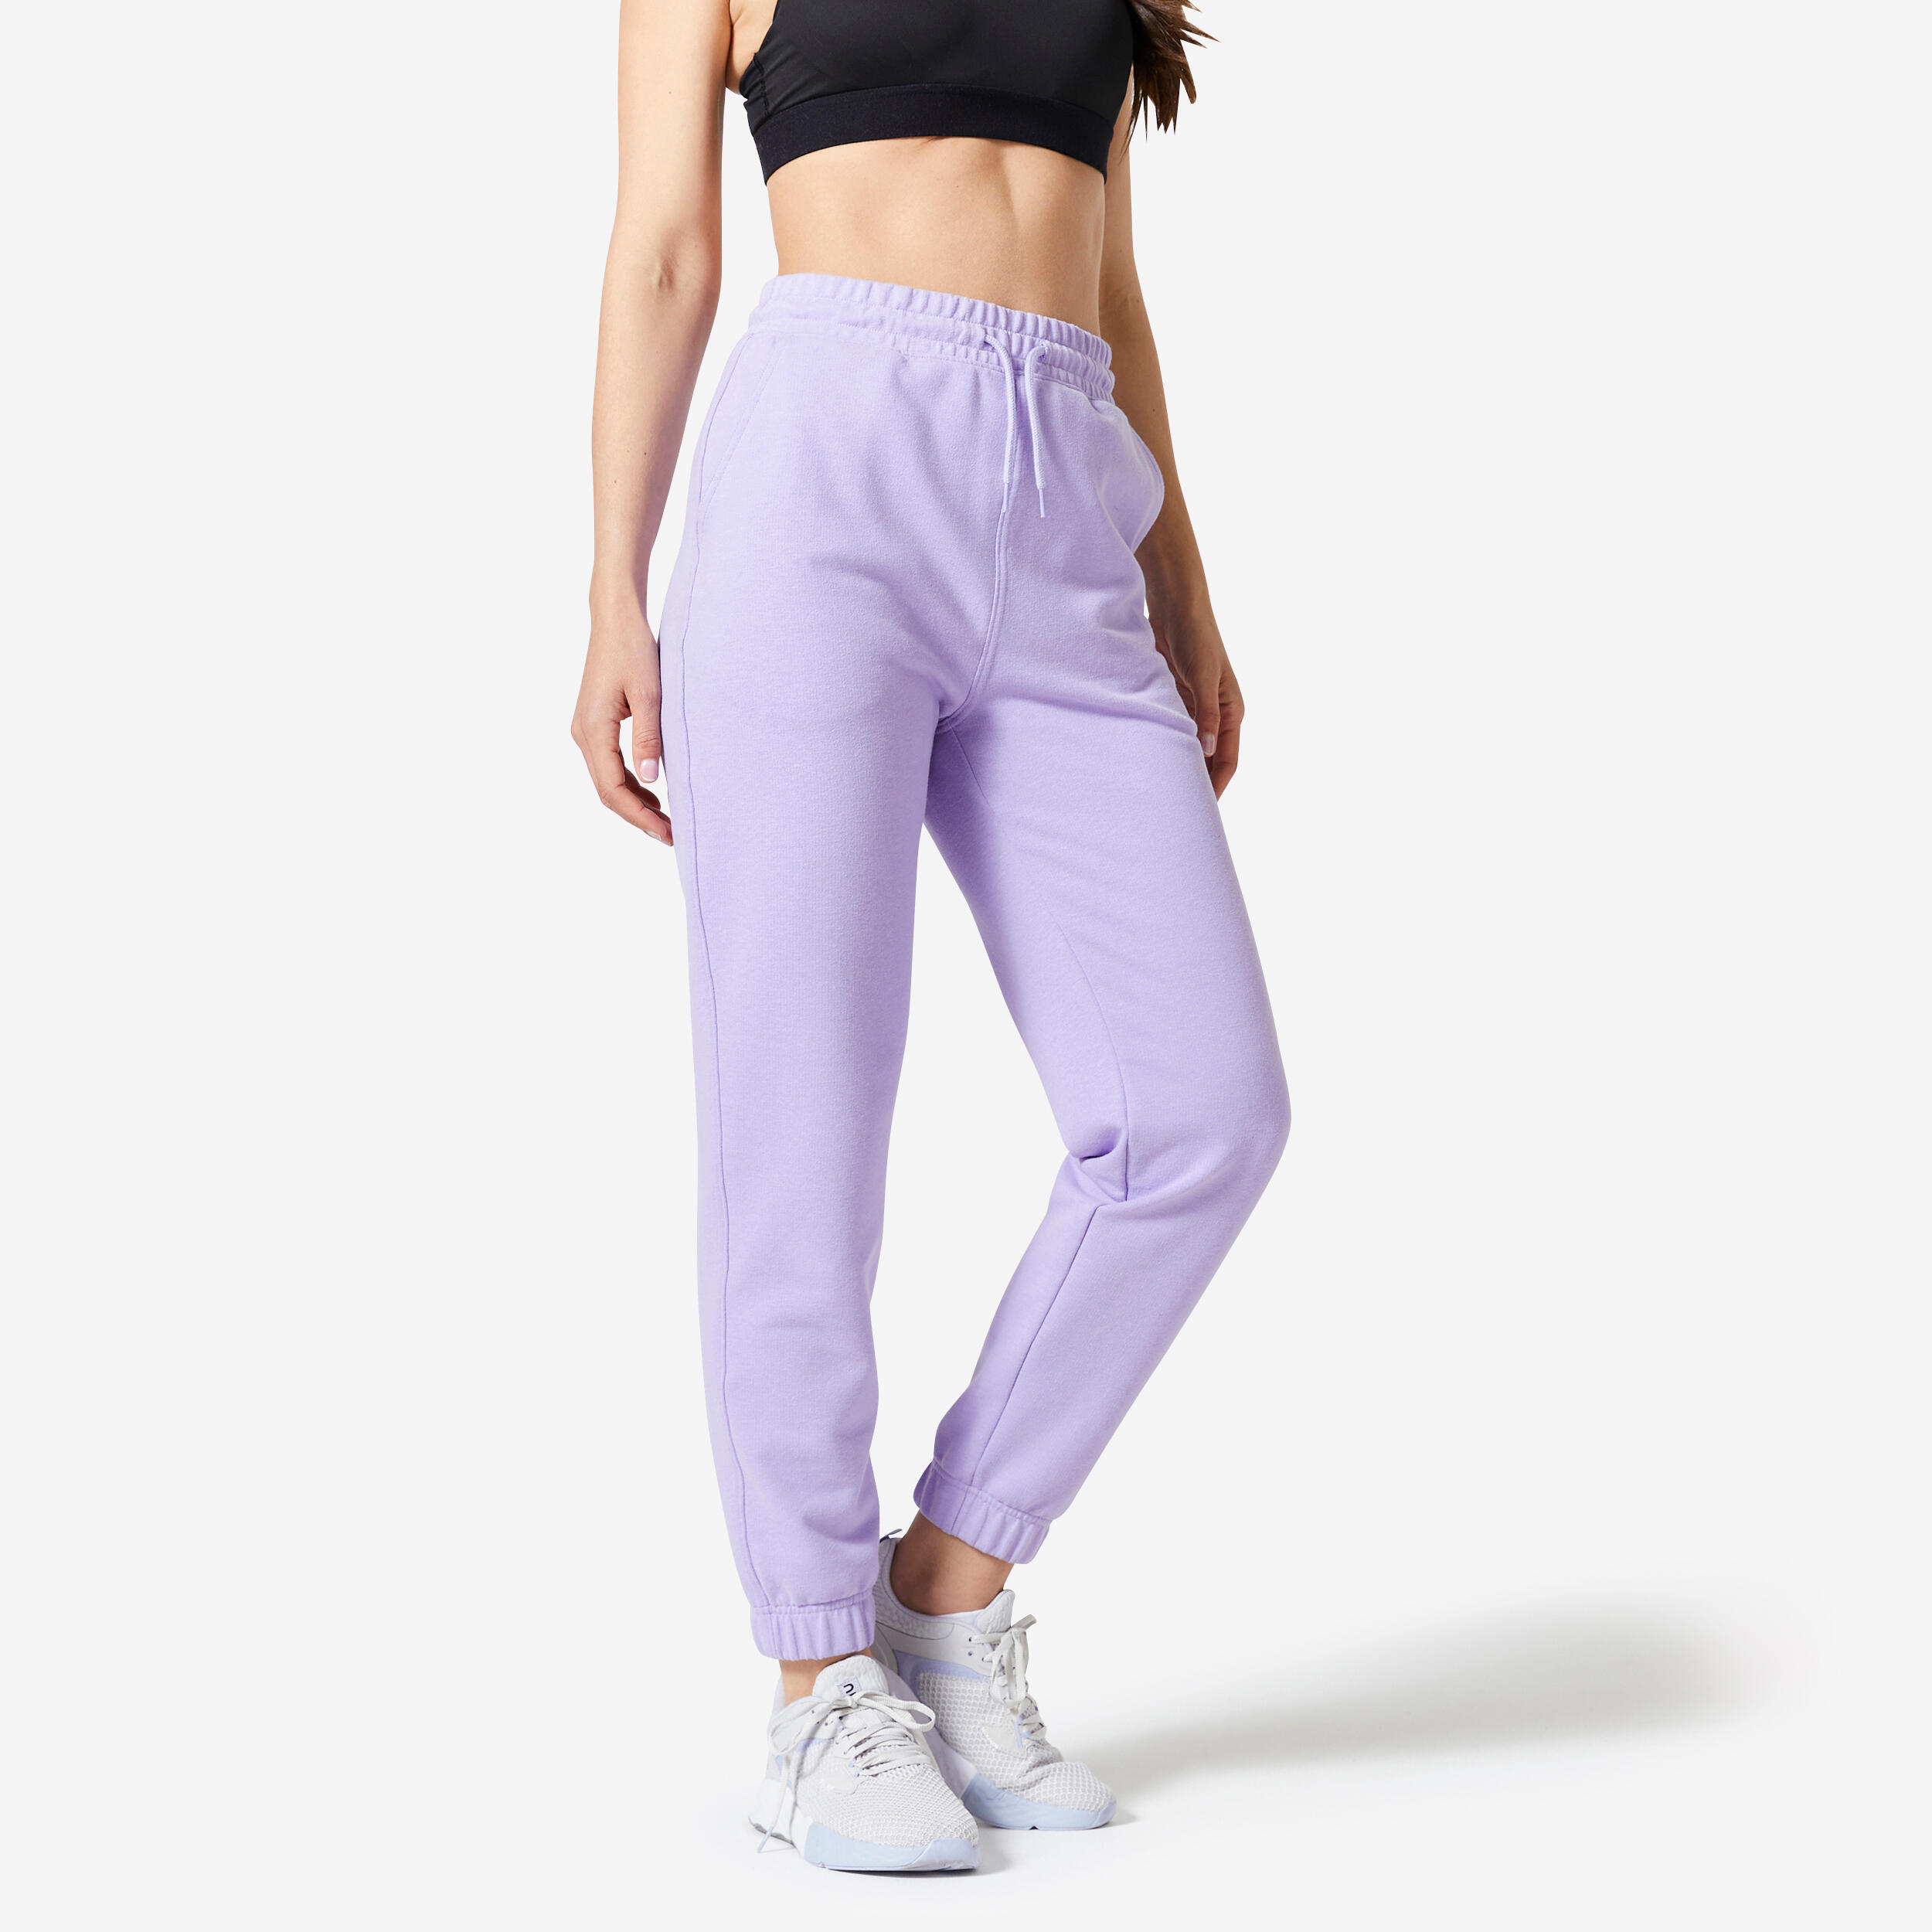 Pantalon de sport femme – Essentials 500 violet - Violet neon